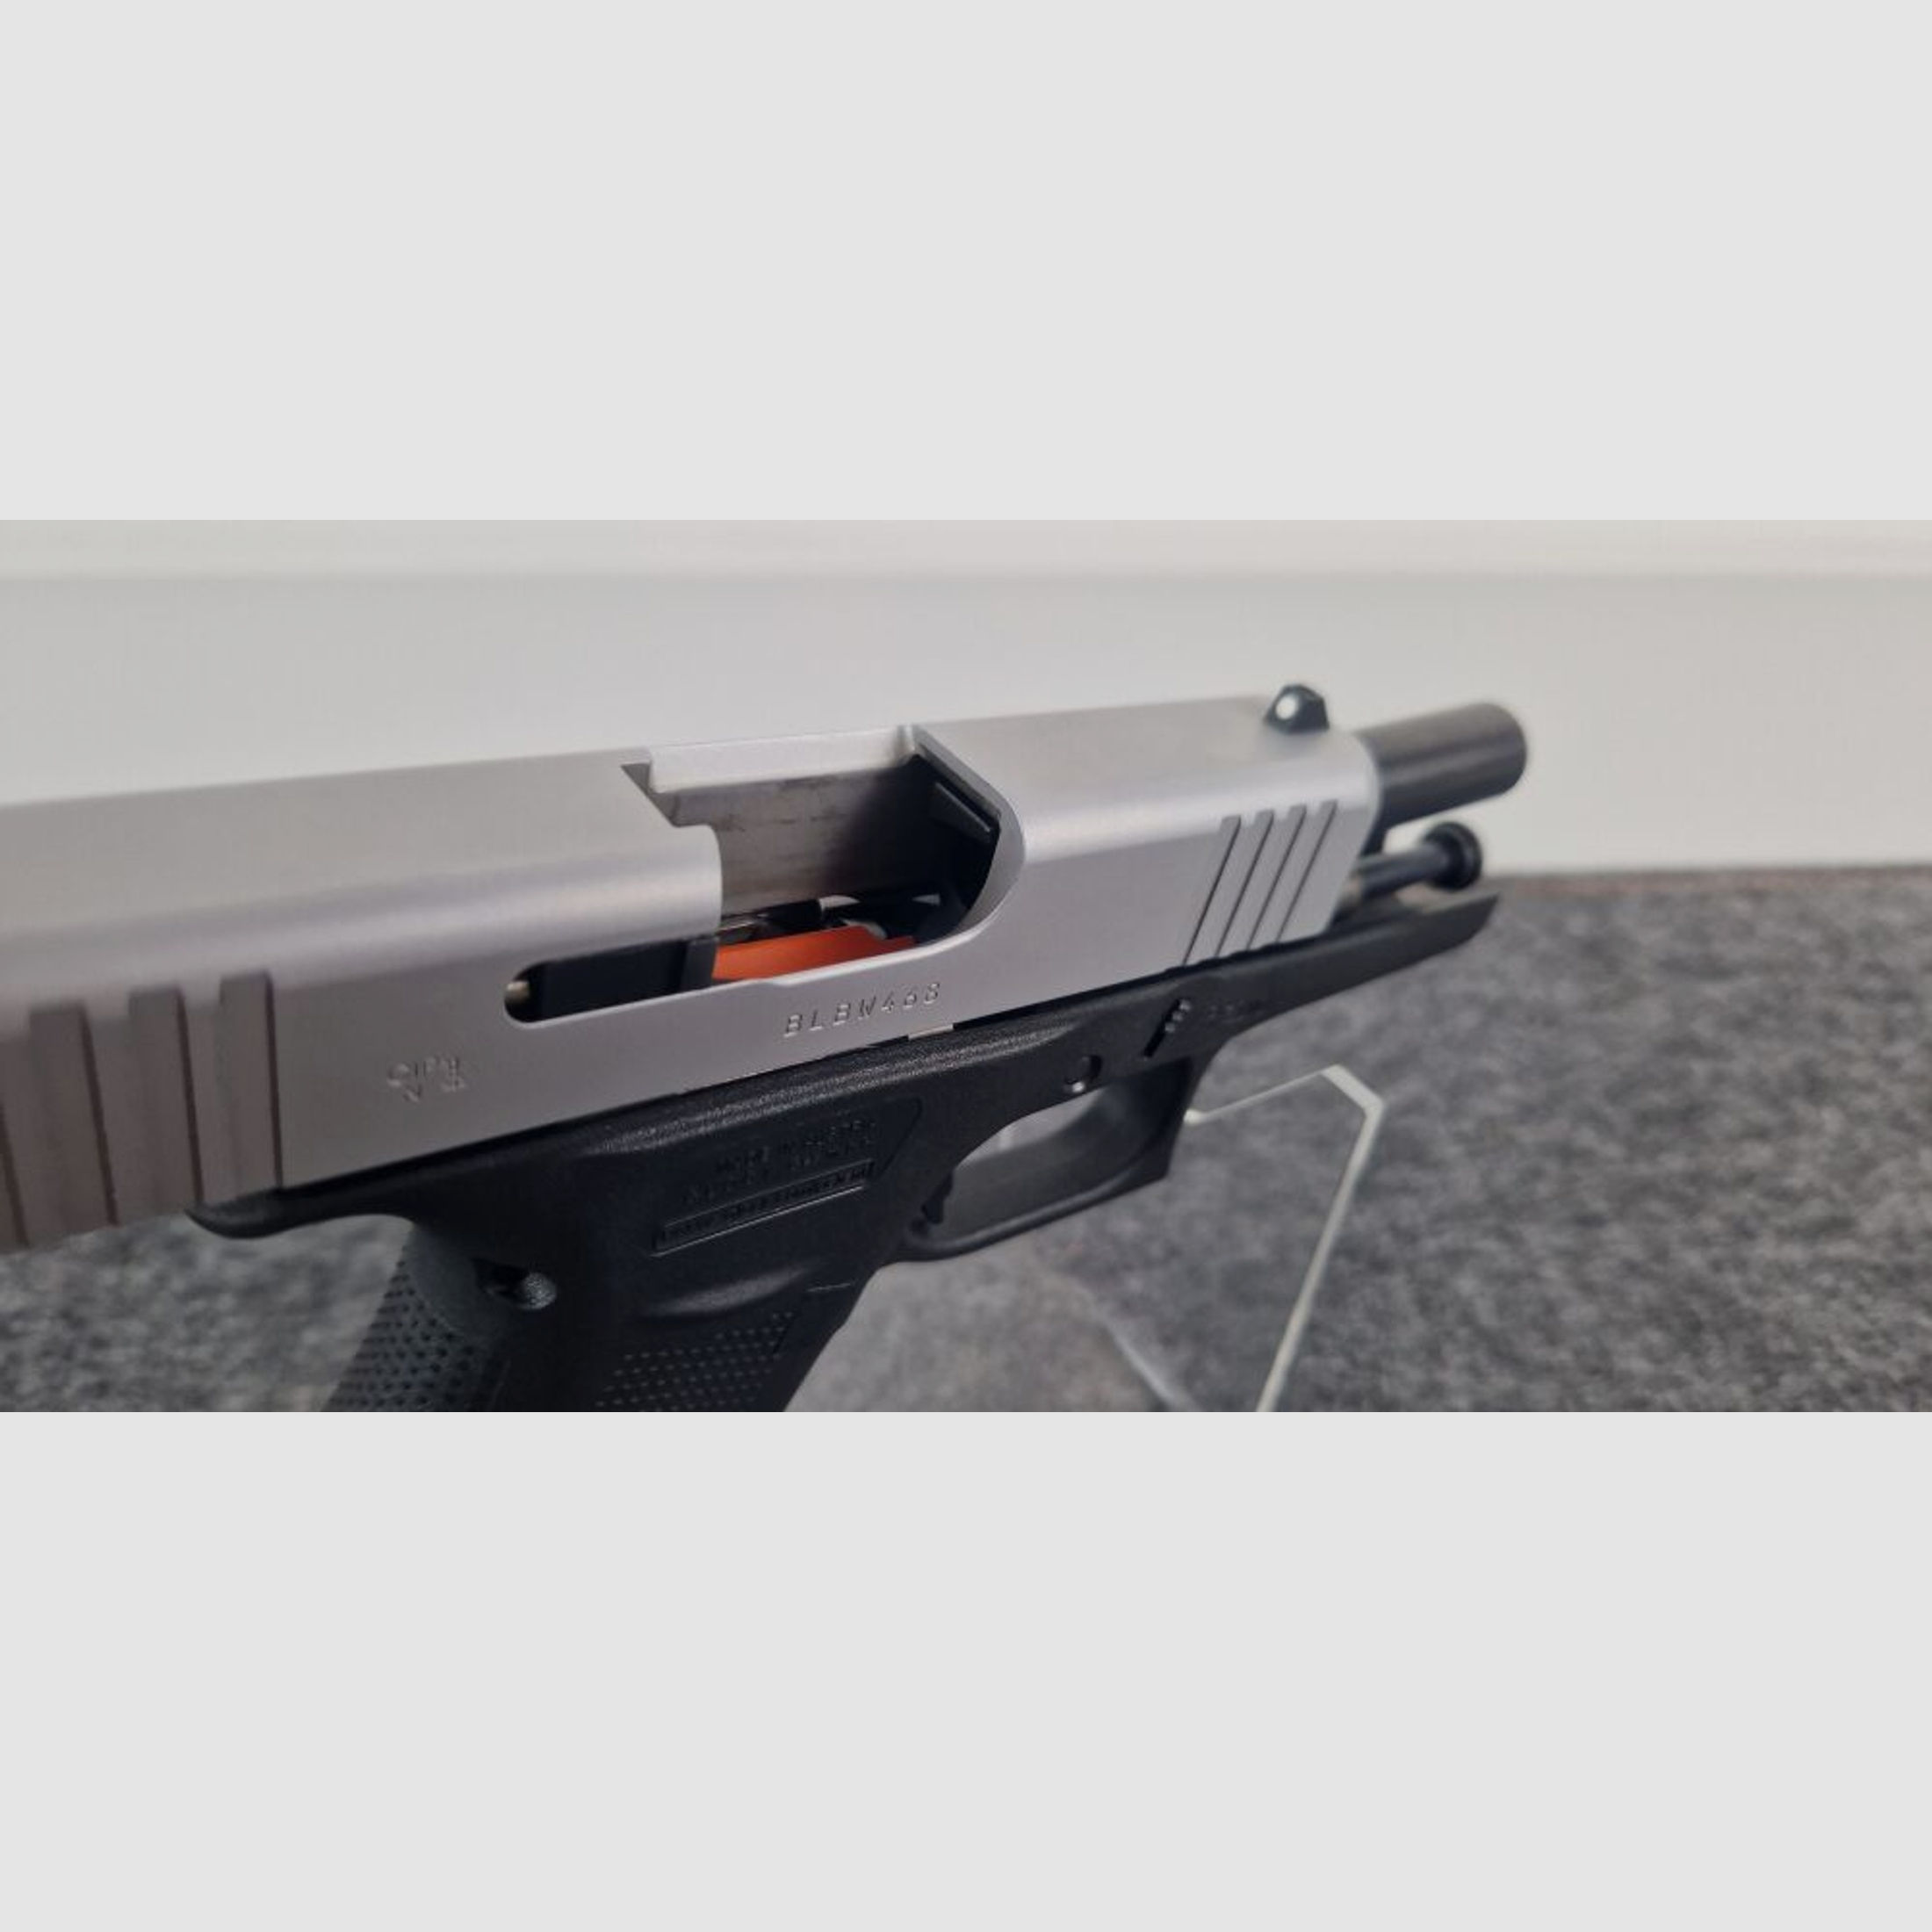 Glock	 Pistole Glock 43x - silver - 9mm Luger